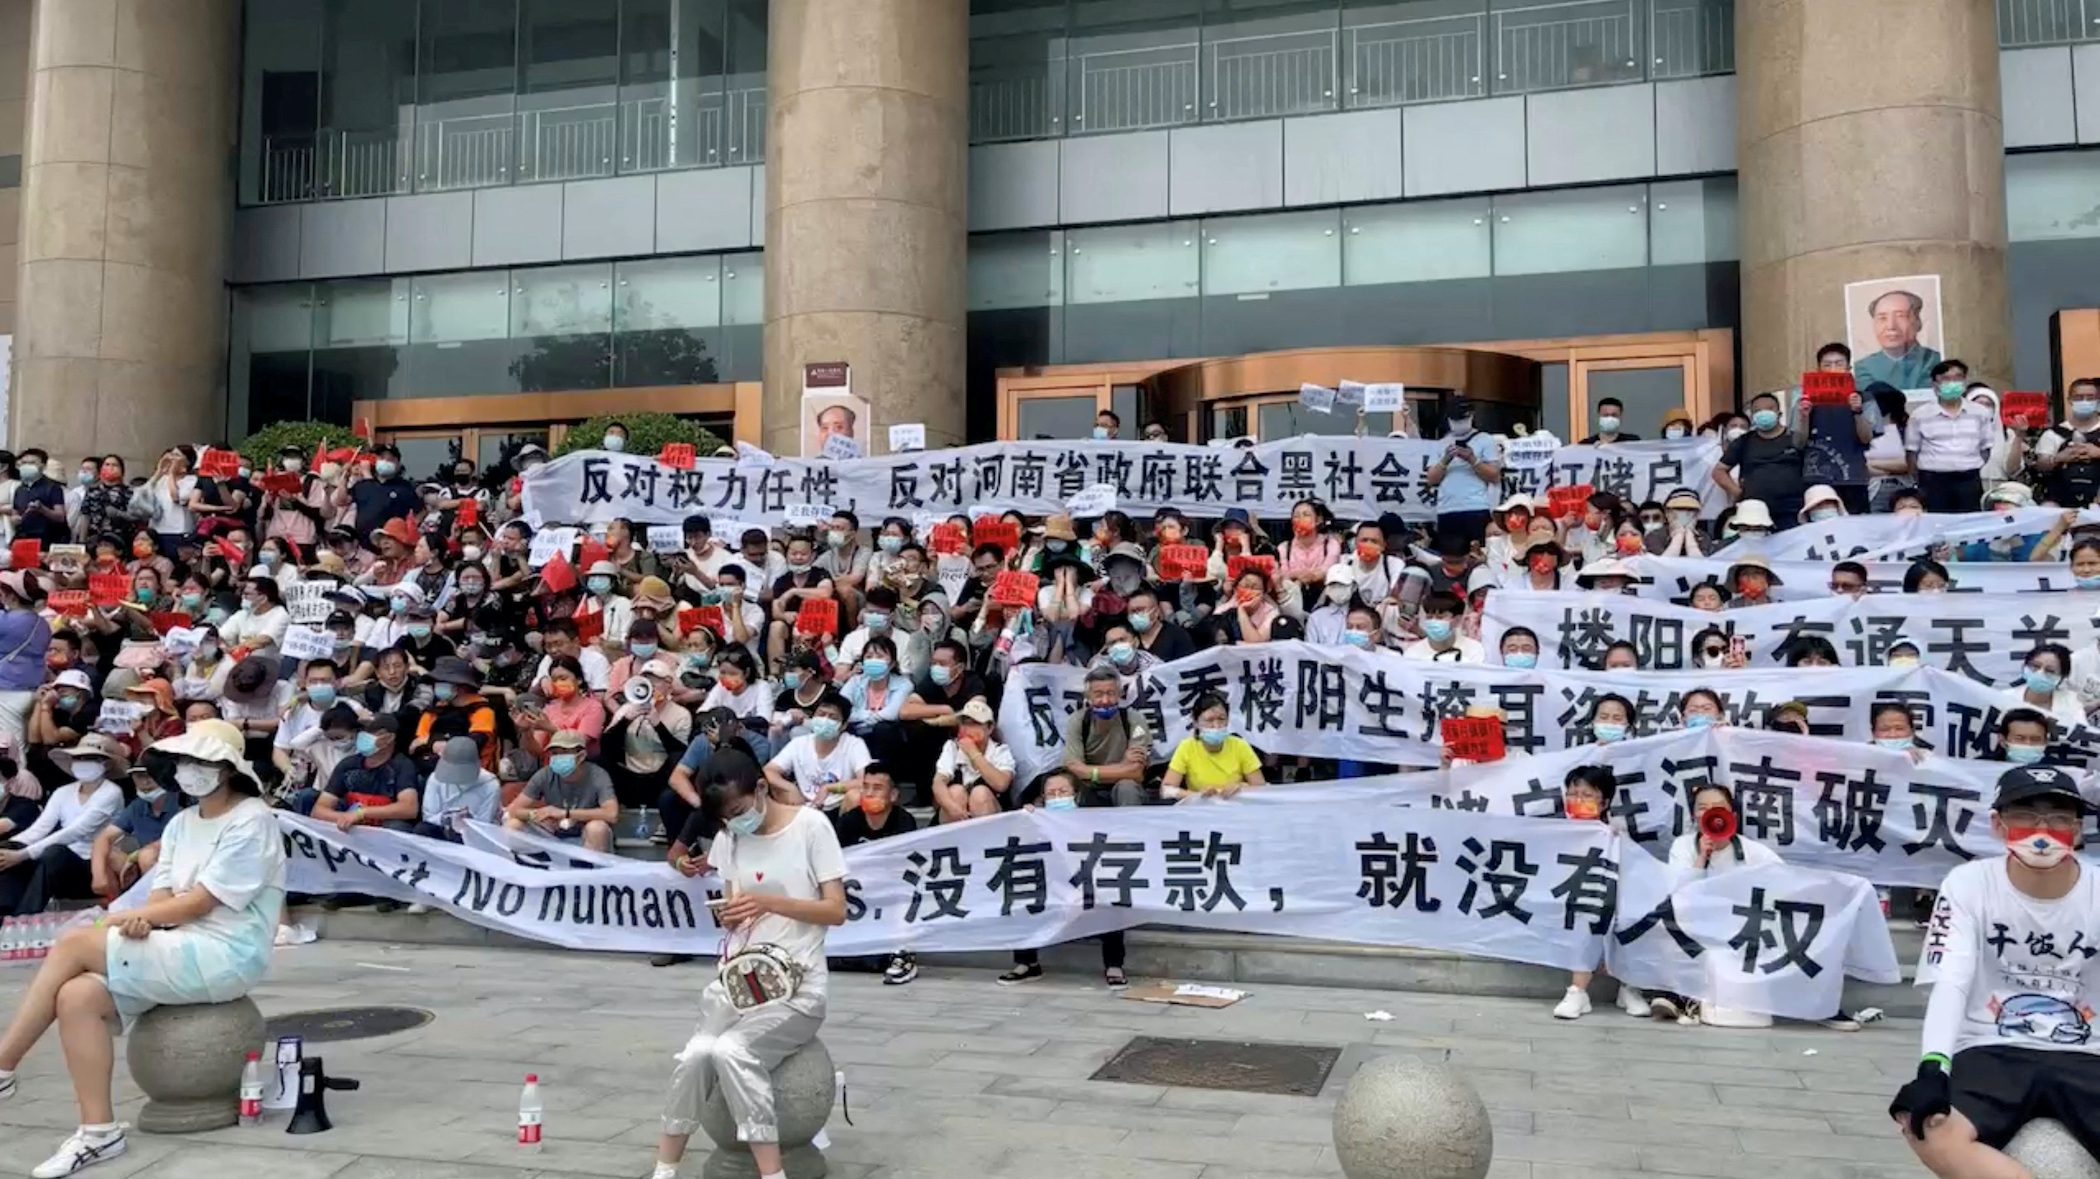 China’s Henan bank customers face harassment, job loss over protests